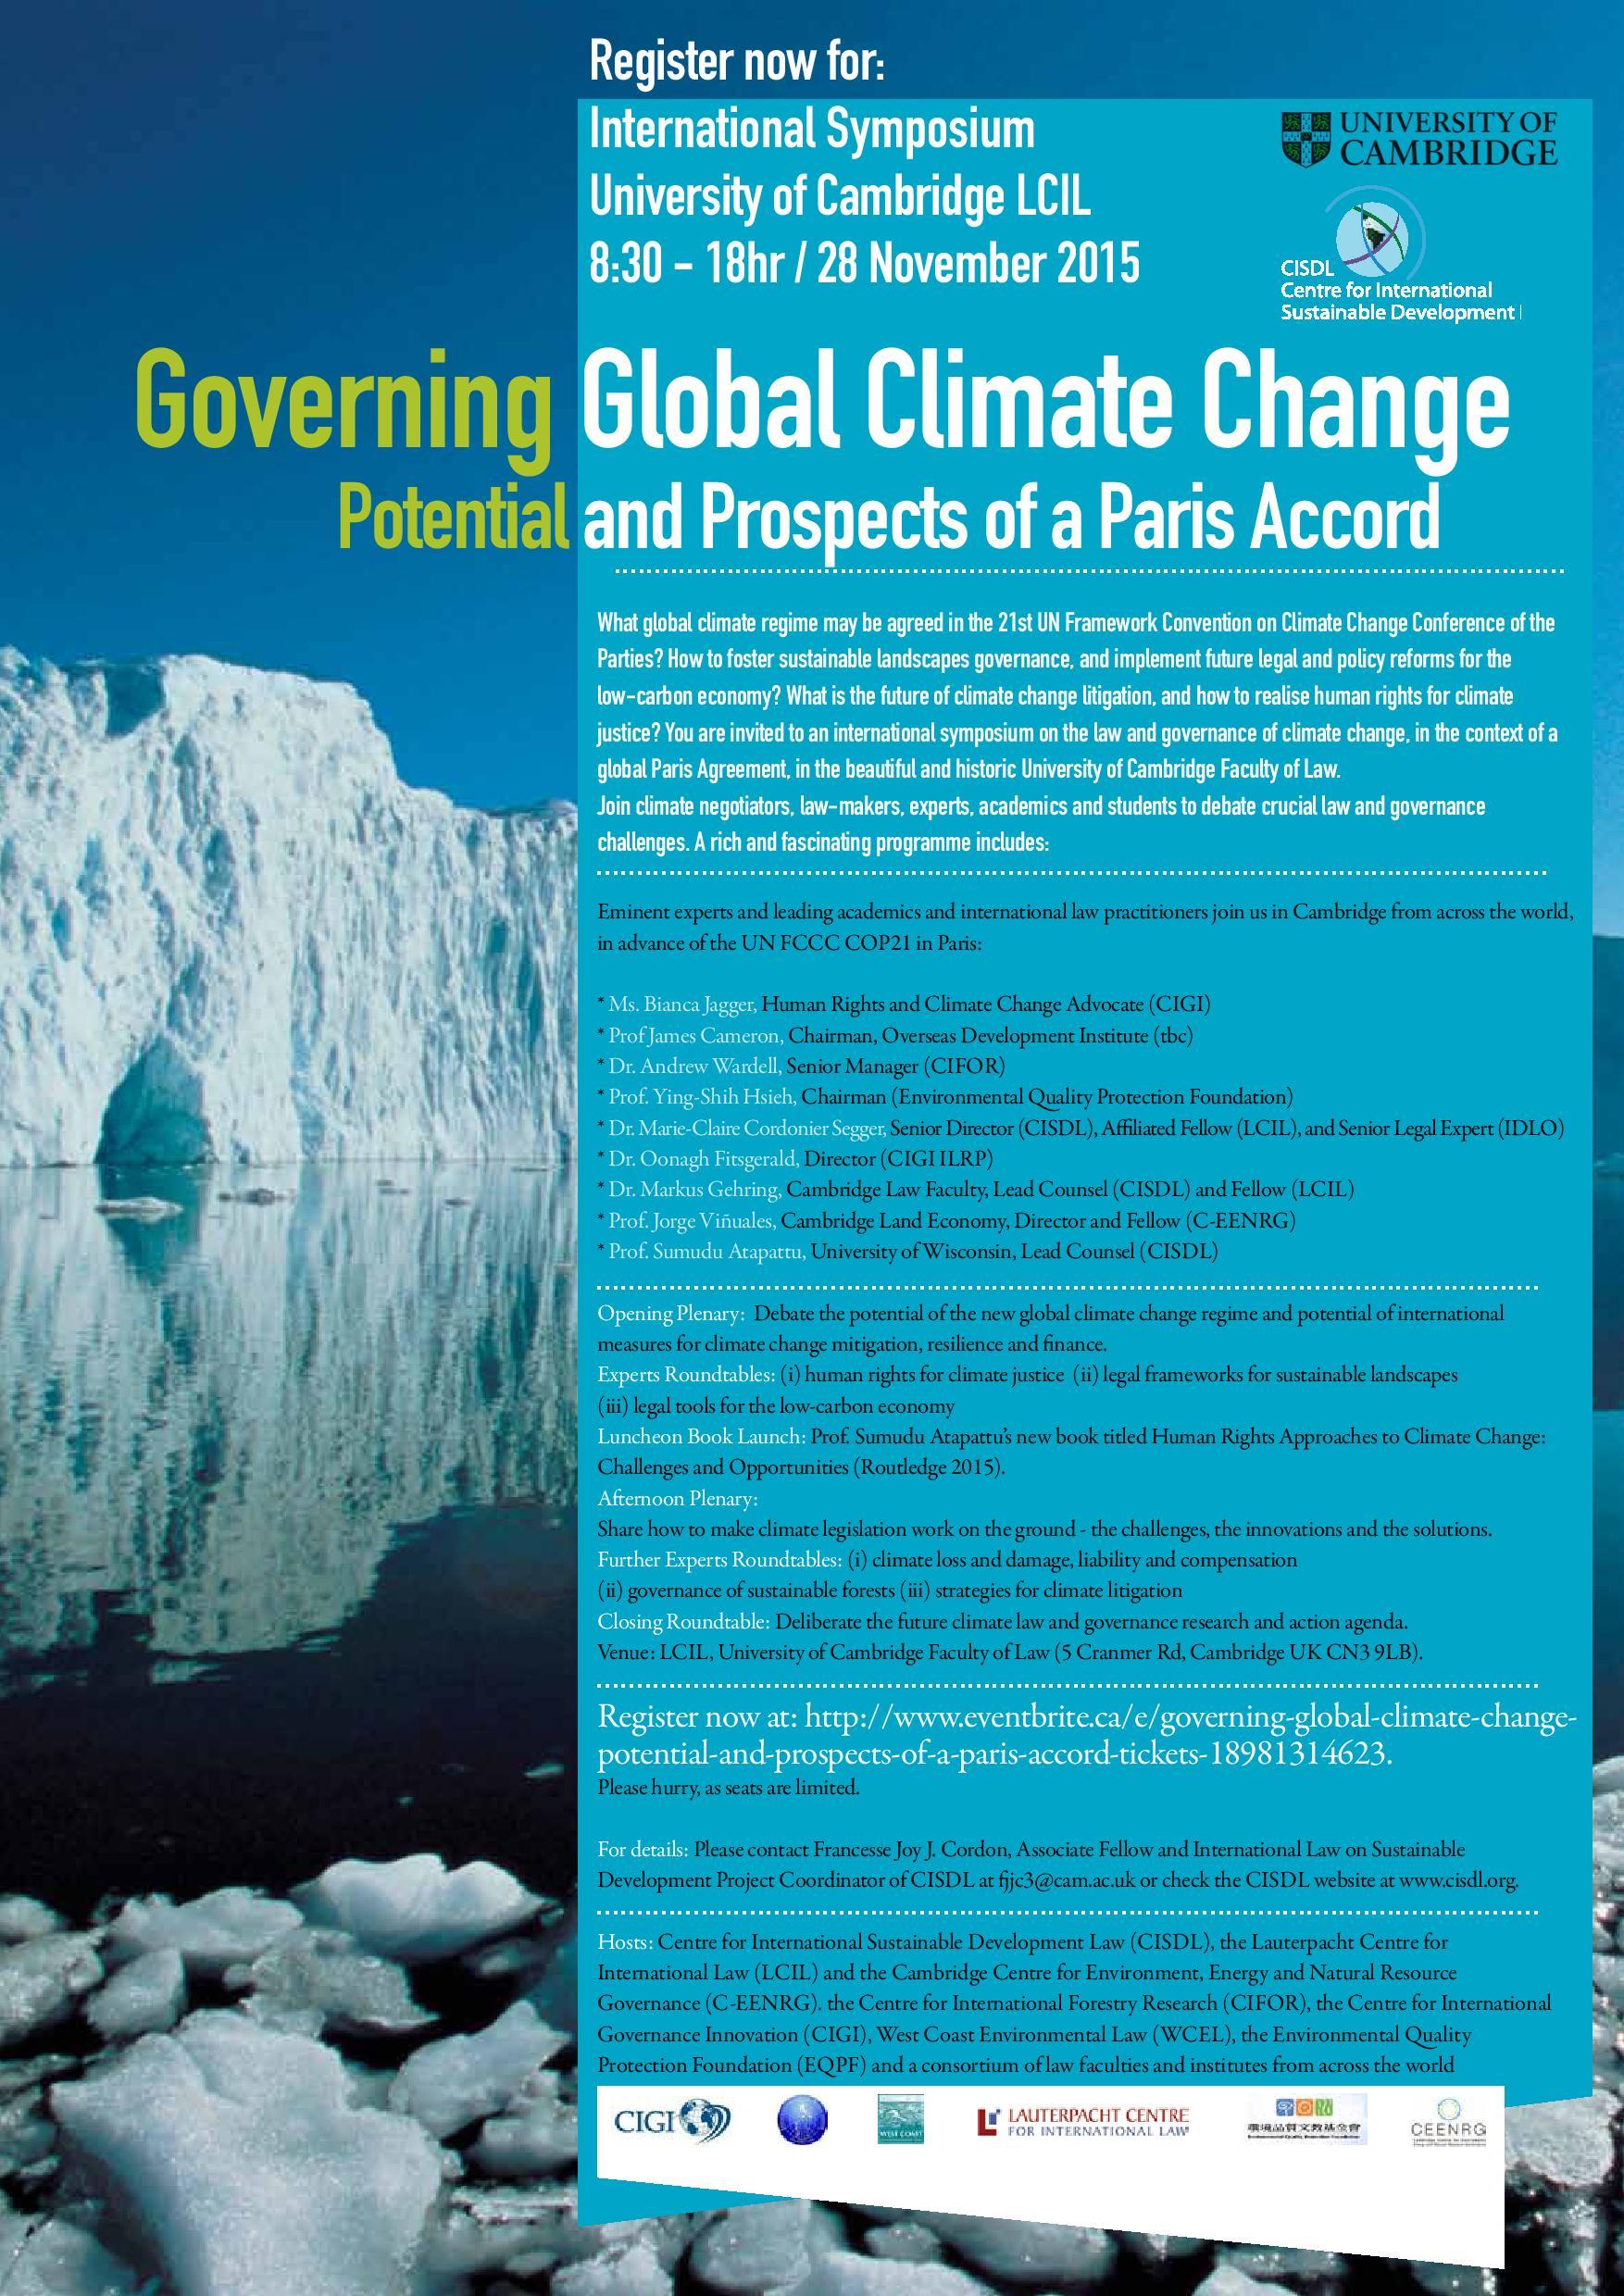 Cambridge Symposium on Governing Global Climate Change - 28 Nov 2015